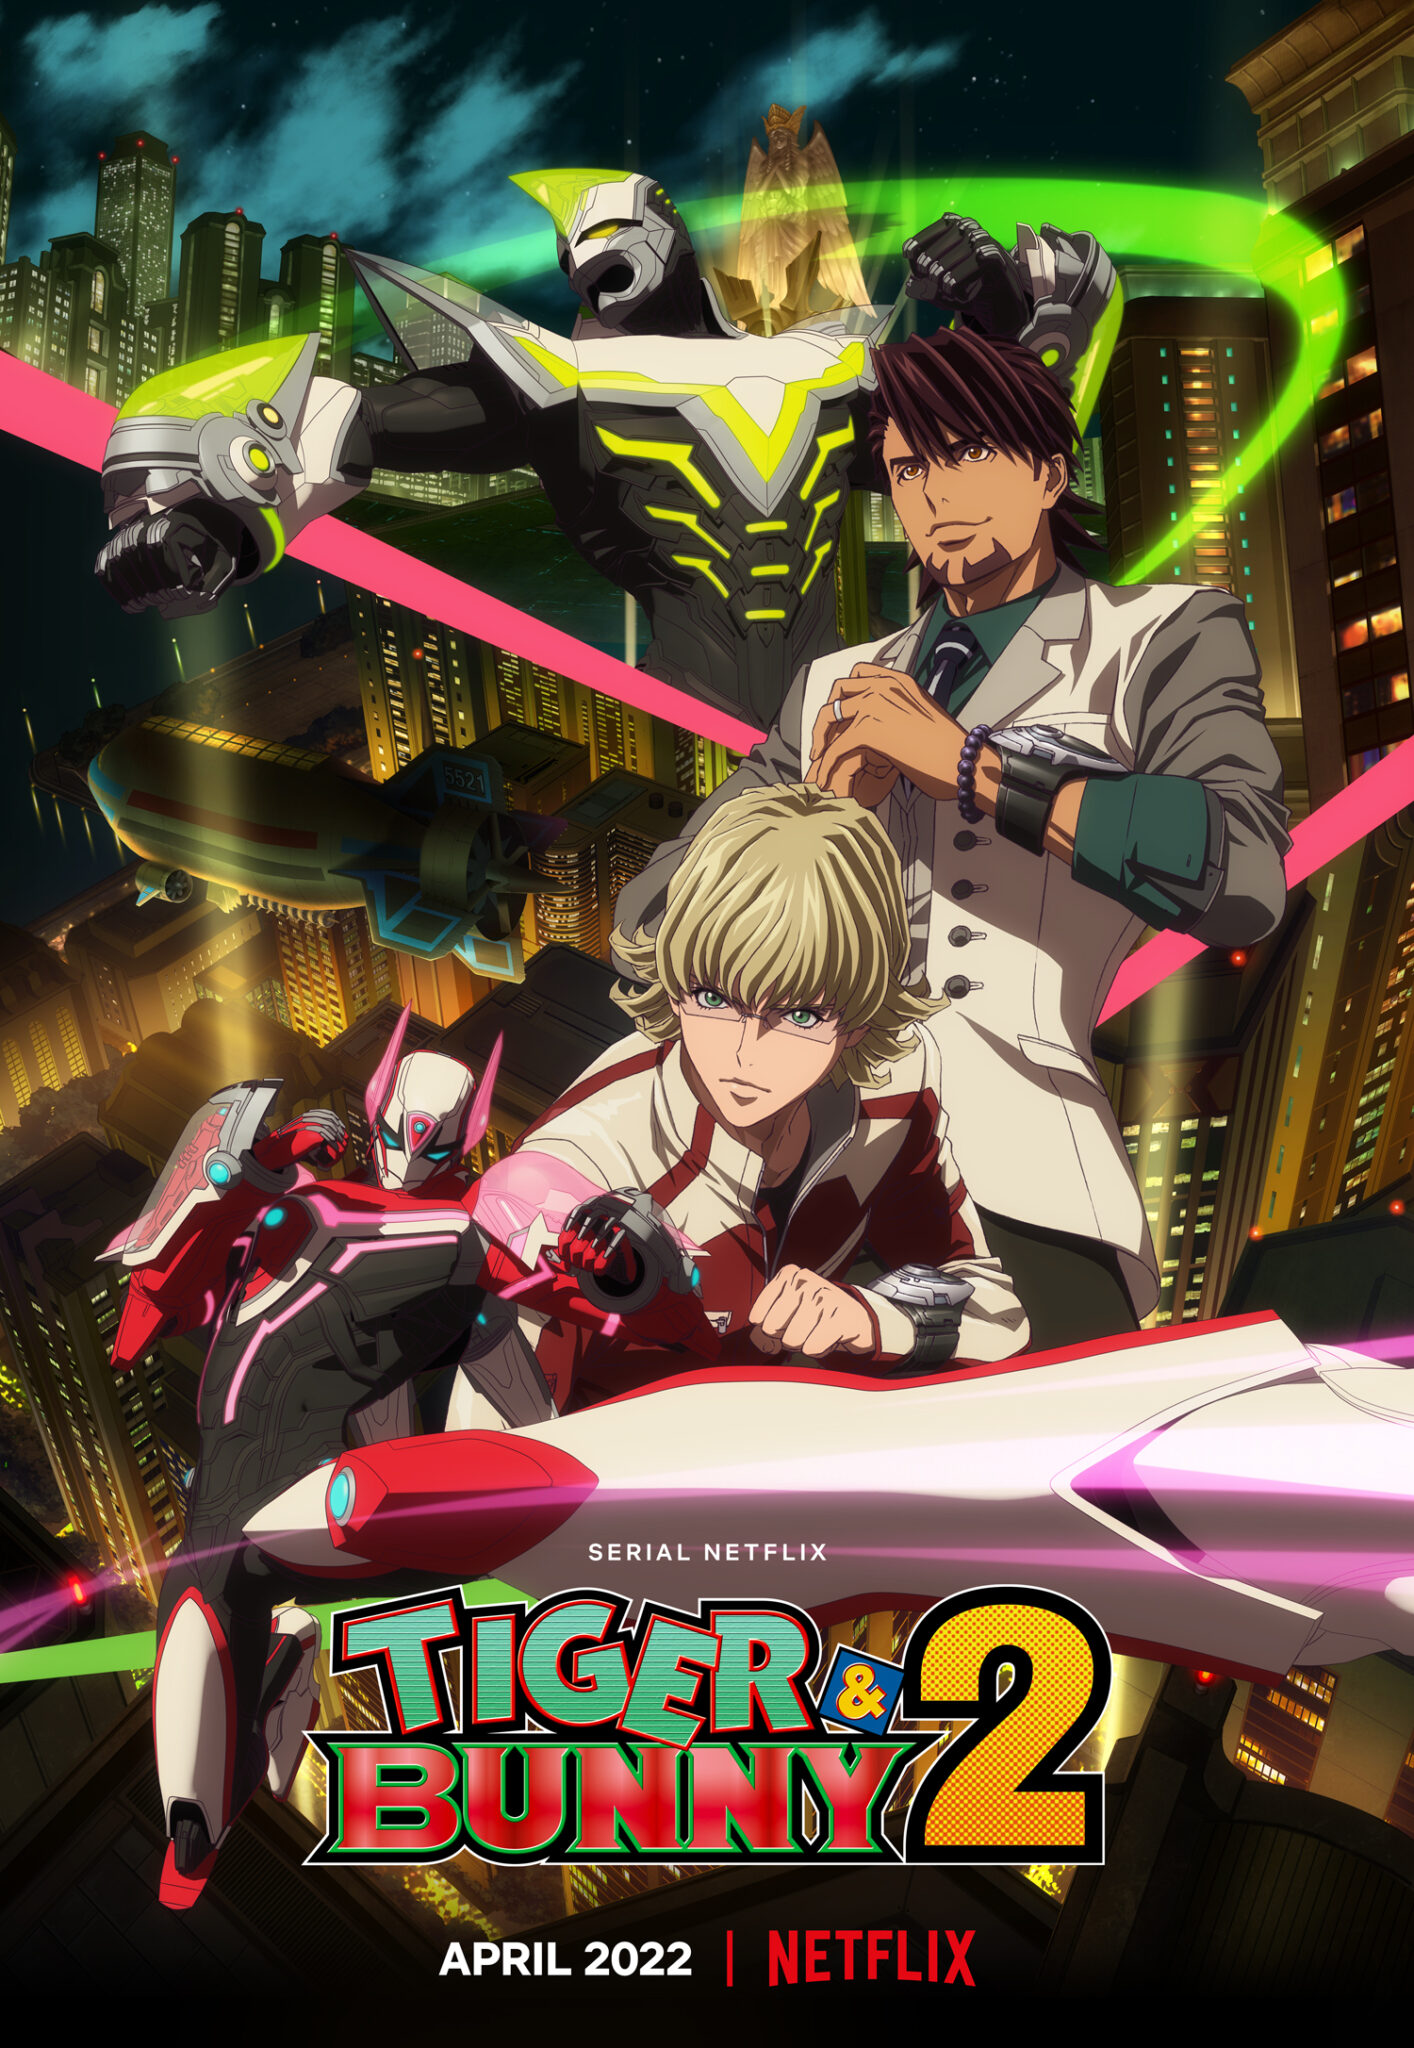 Das Plakat zum Anime Tiger and Bunny zeigt zwei Menschen und zwei große Roboter vor einer nächtlichen Skyline.